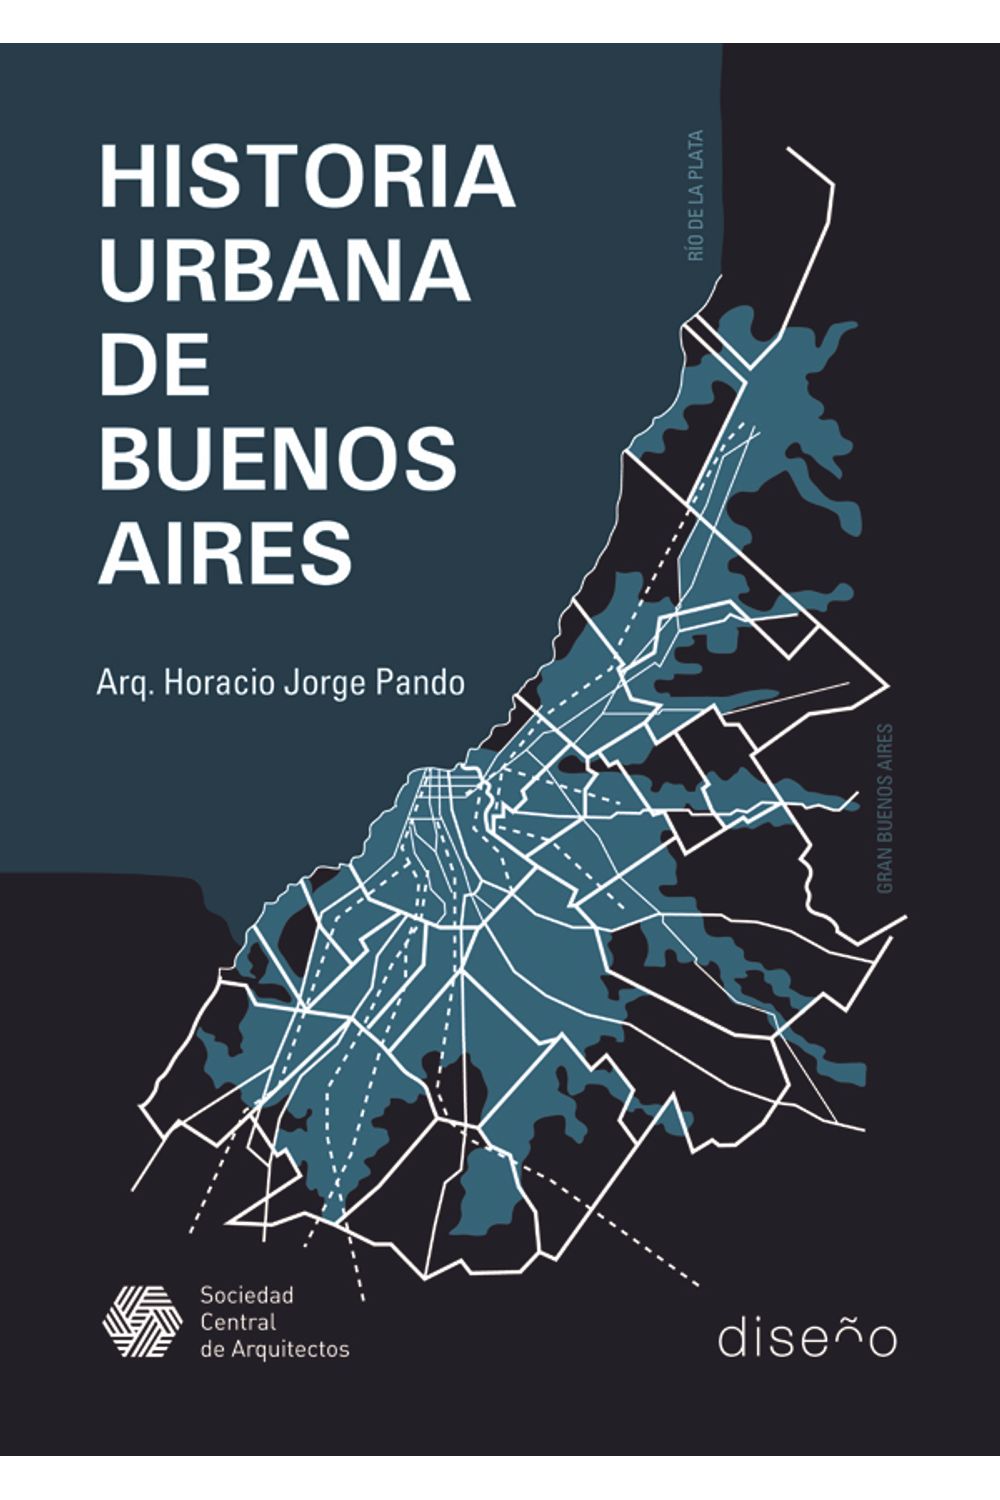 bm-historia-urbana-de-buenos-aires-1536-2007-nobukodiseno-editorial-9789873607295